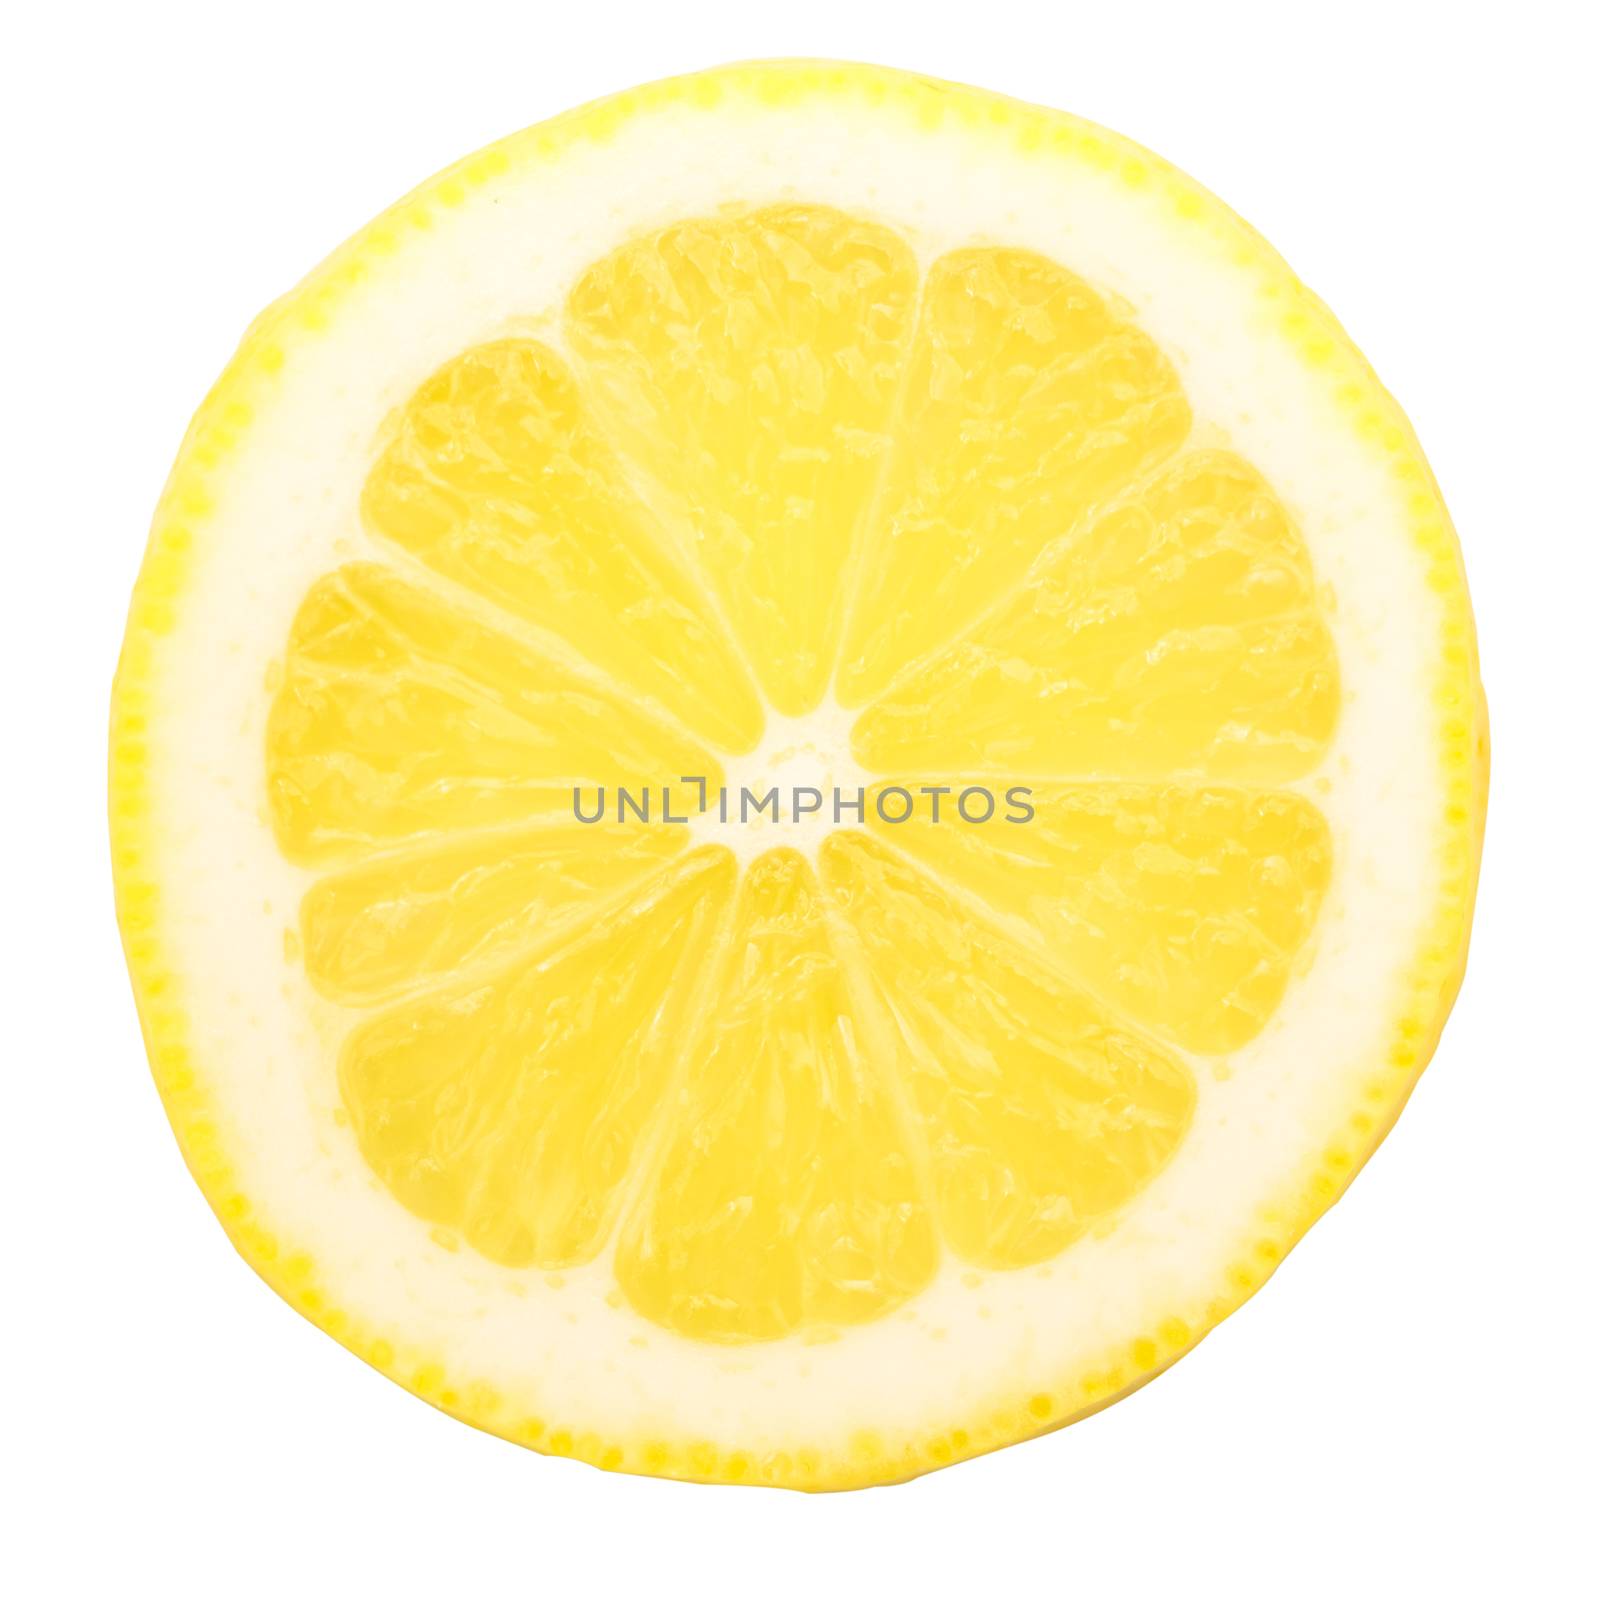 Portion of lemon isolated on white background.